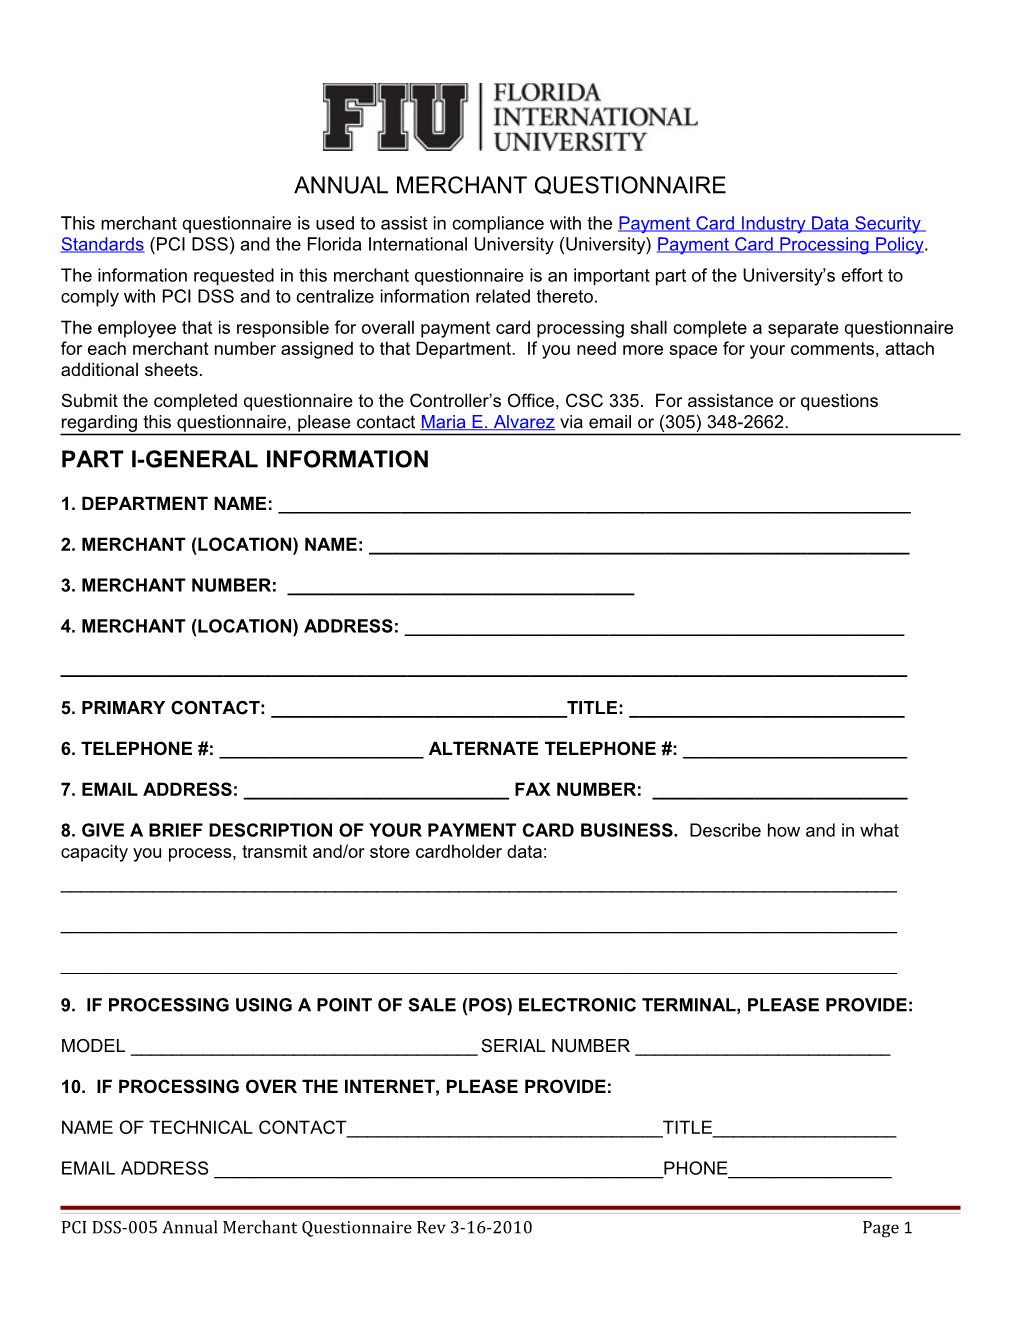 Annual Merchant Questionnaire